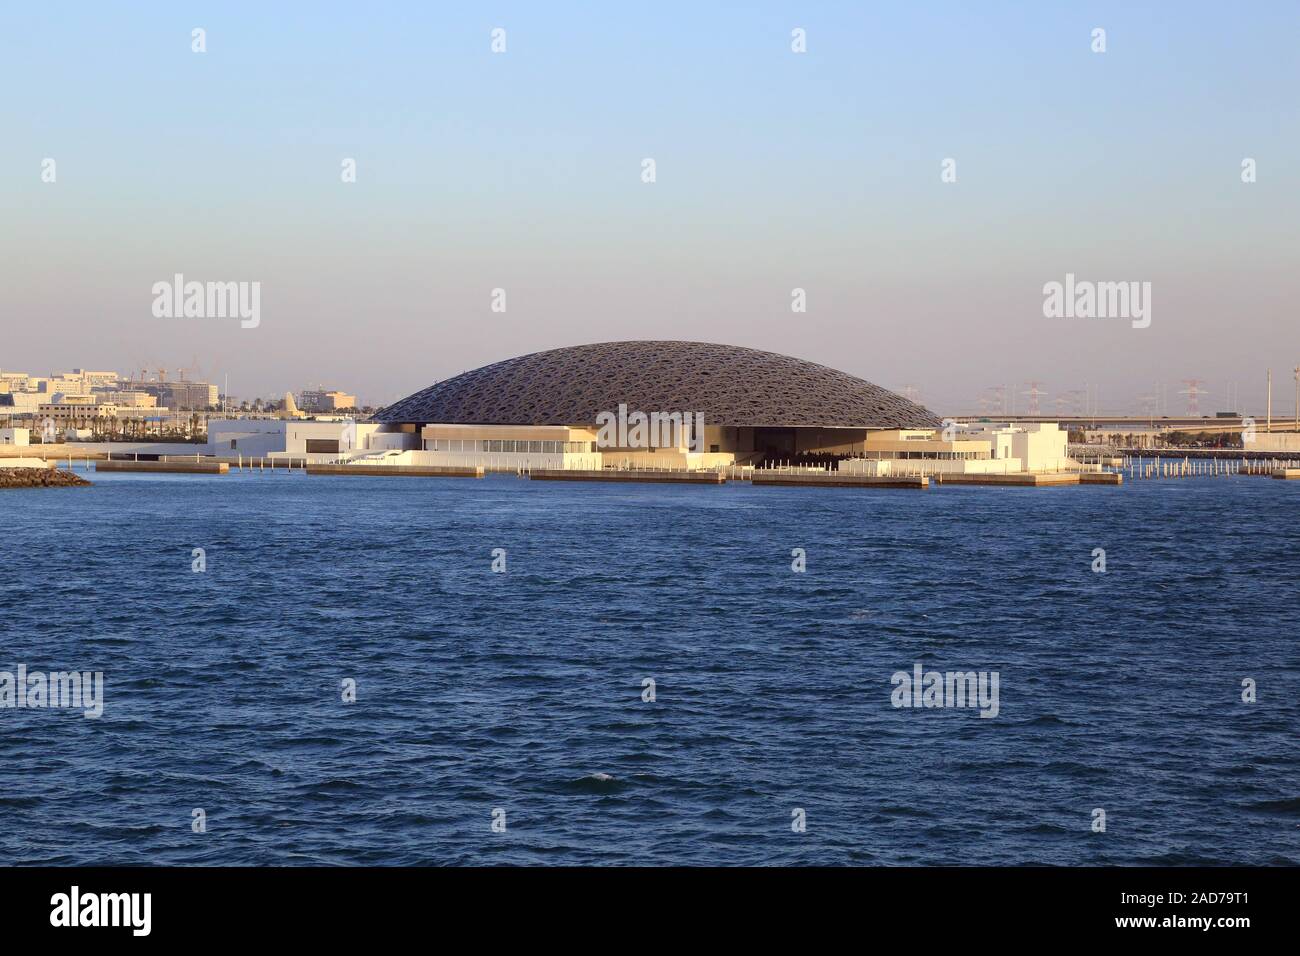 Louvre Abu Dhabi, Museum für Moderne Kunst mit Kuppeldach am Persischen Golf Stockfoto